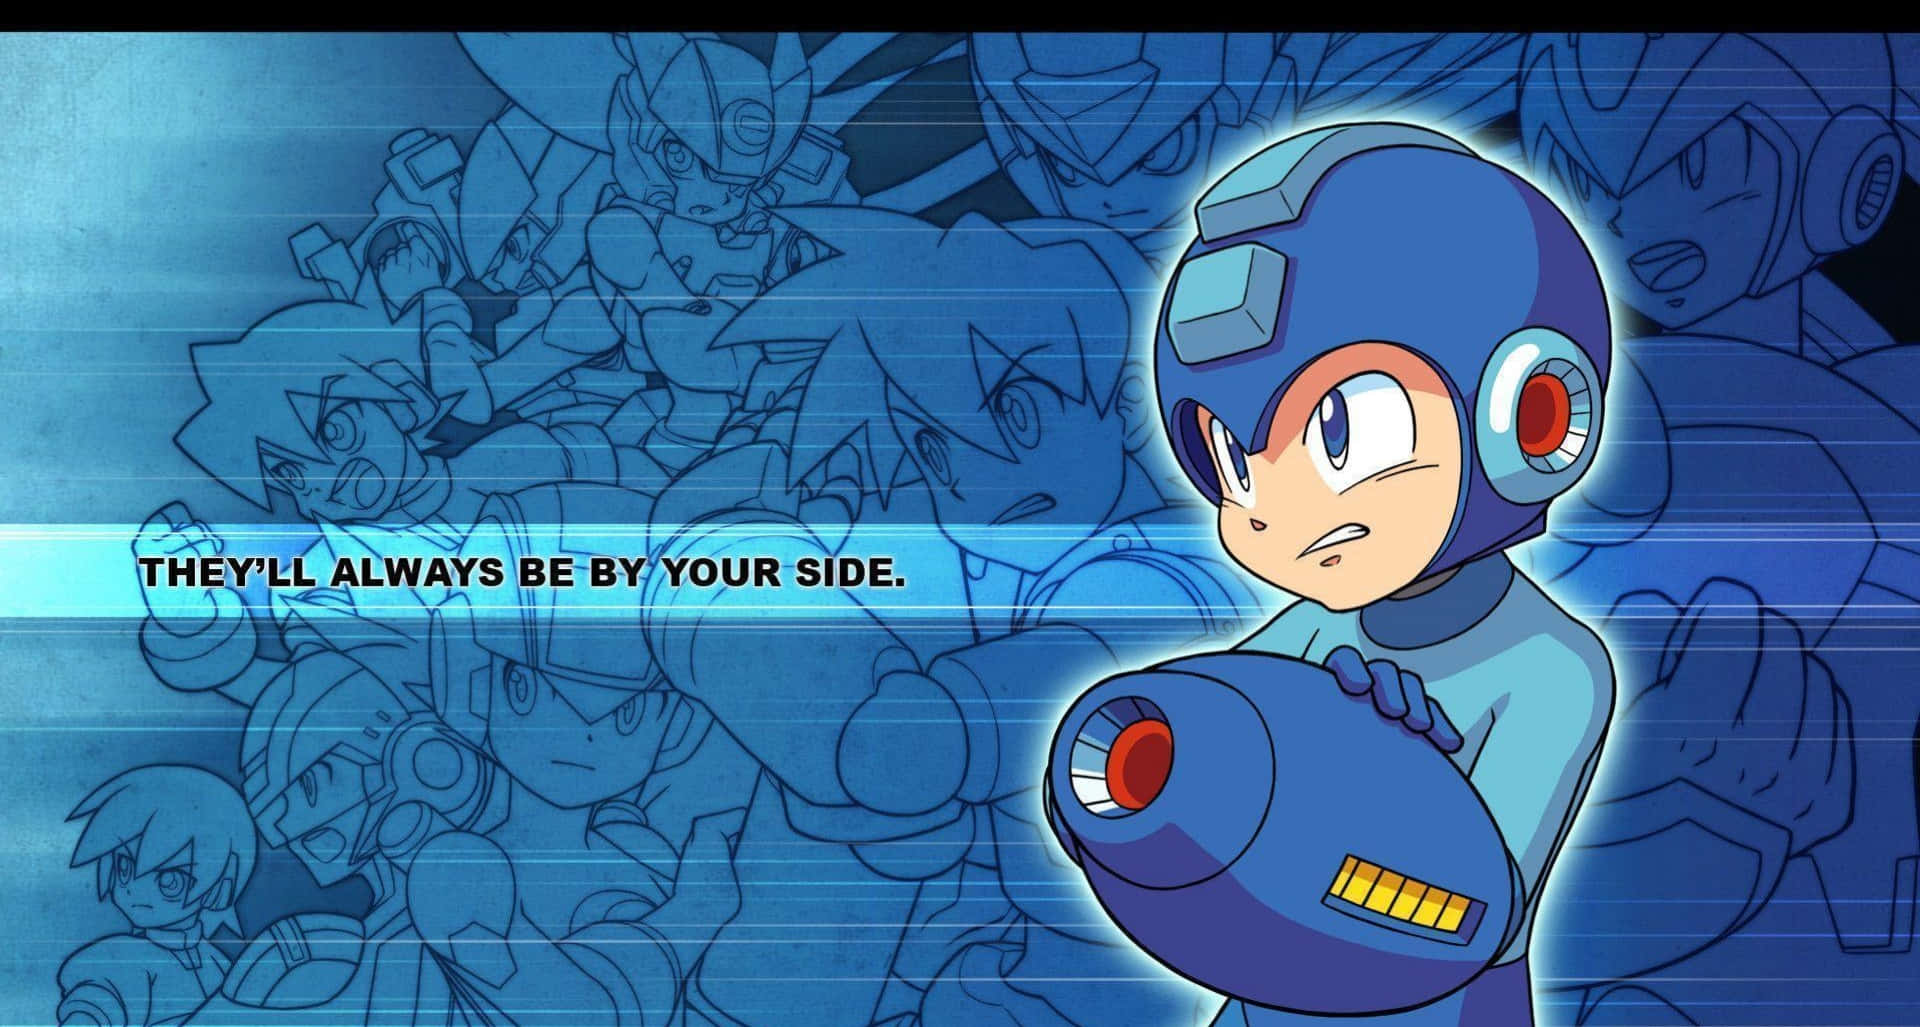 Legendärevideospiel-ikone Mega Man Wallpaper